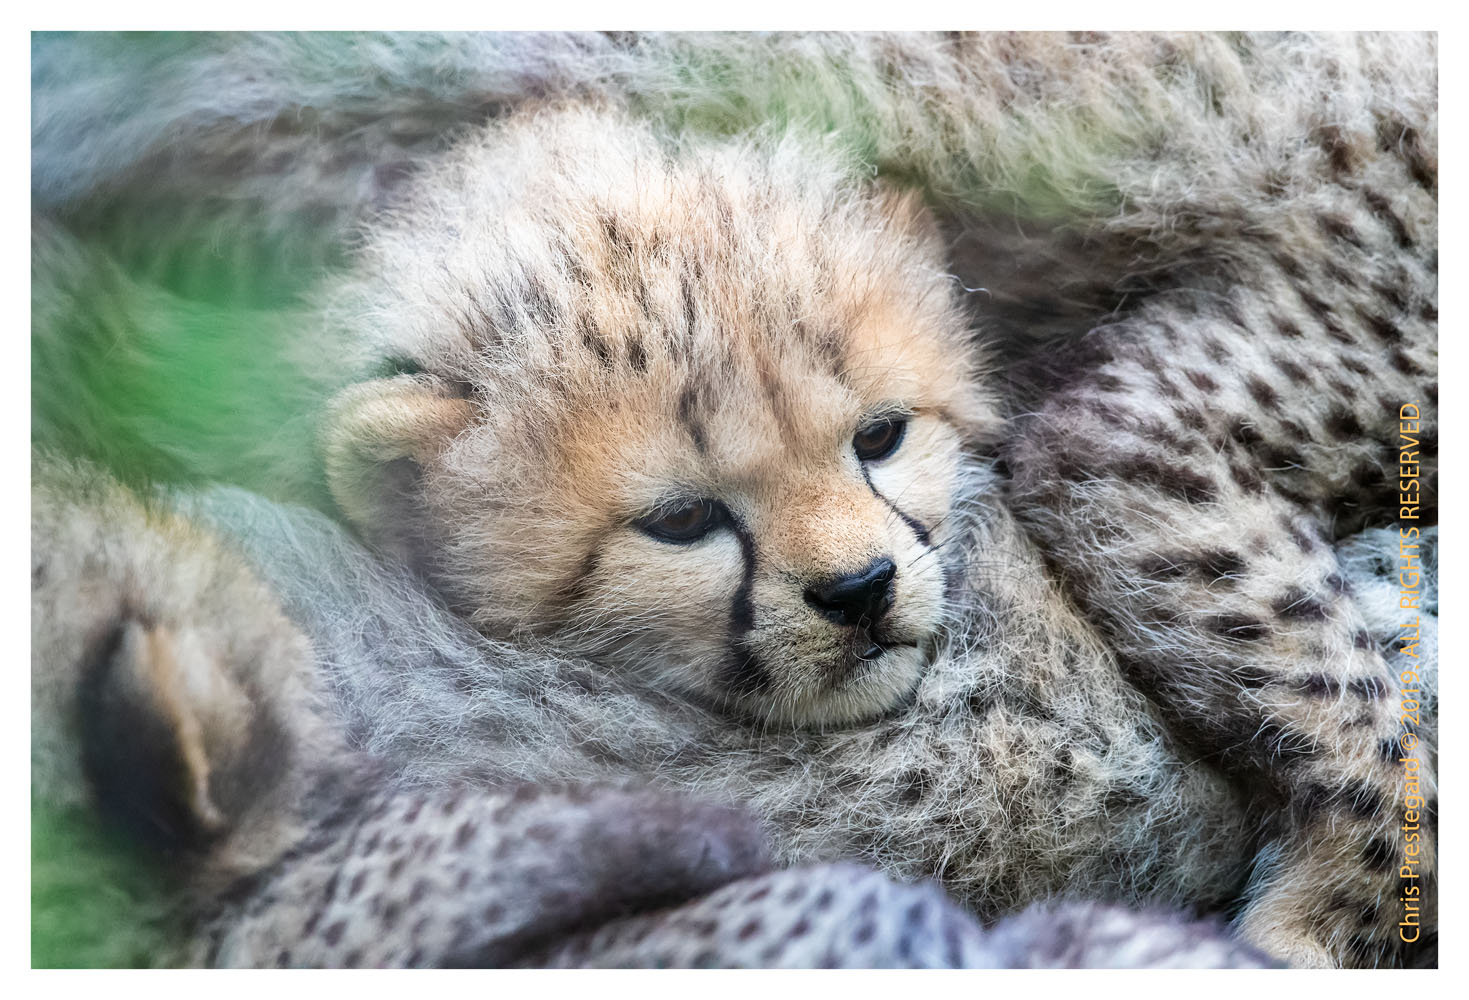 Cheetah cubs at Ndutu, Tanzania Feb. 2019